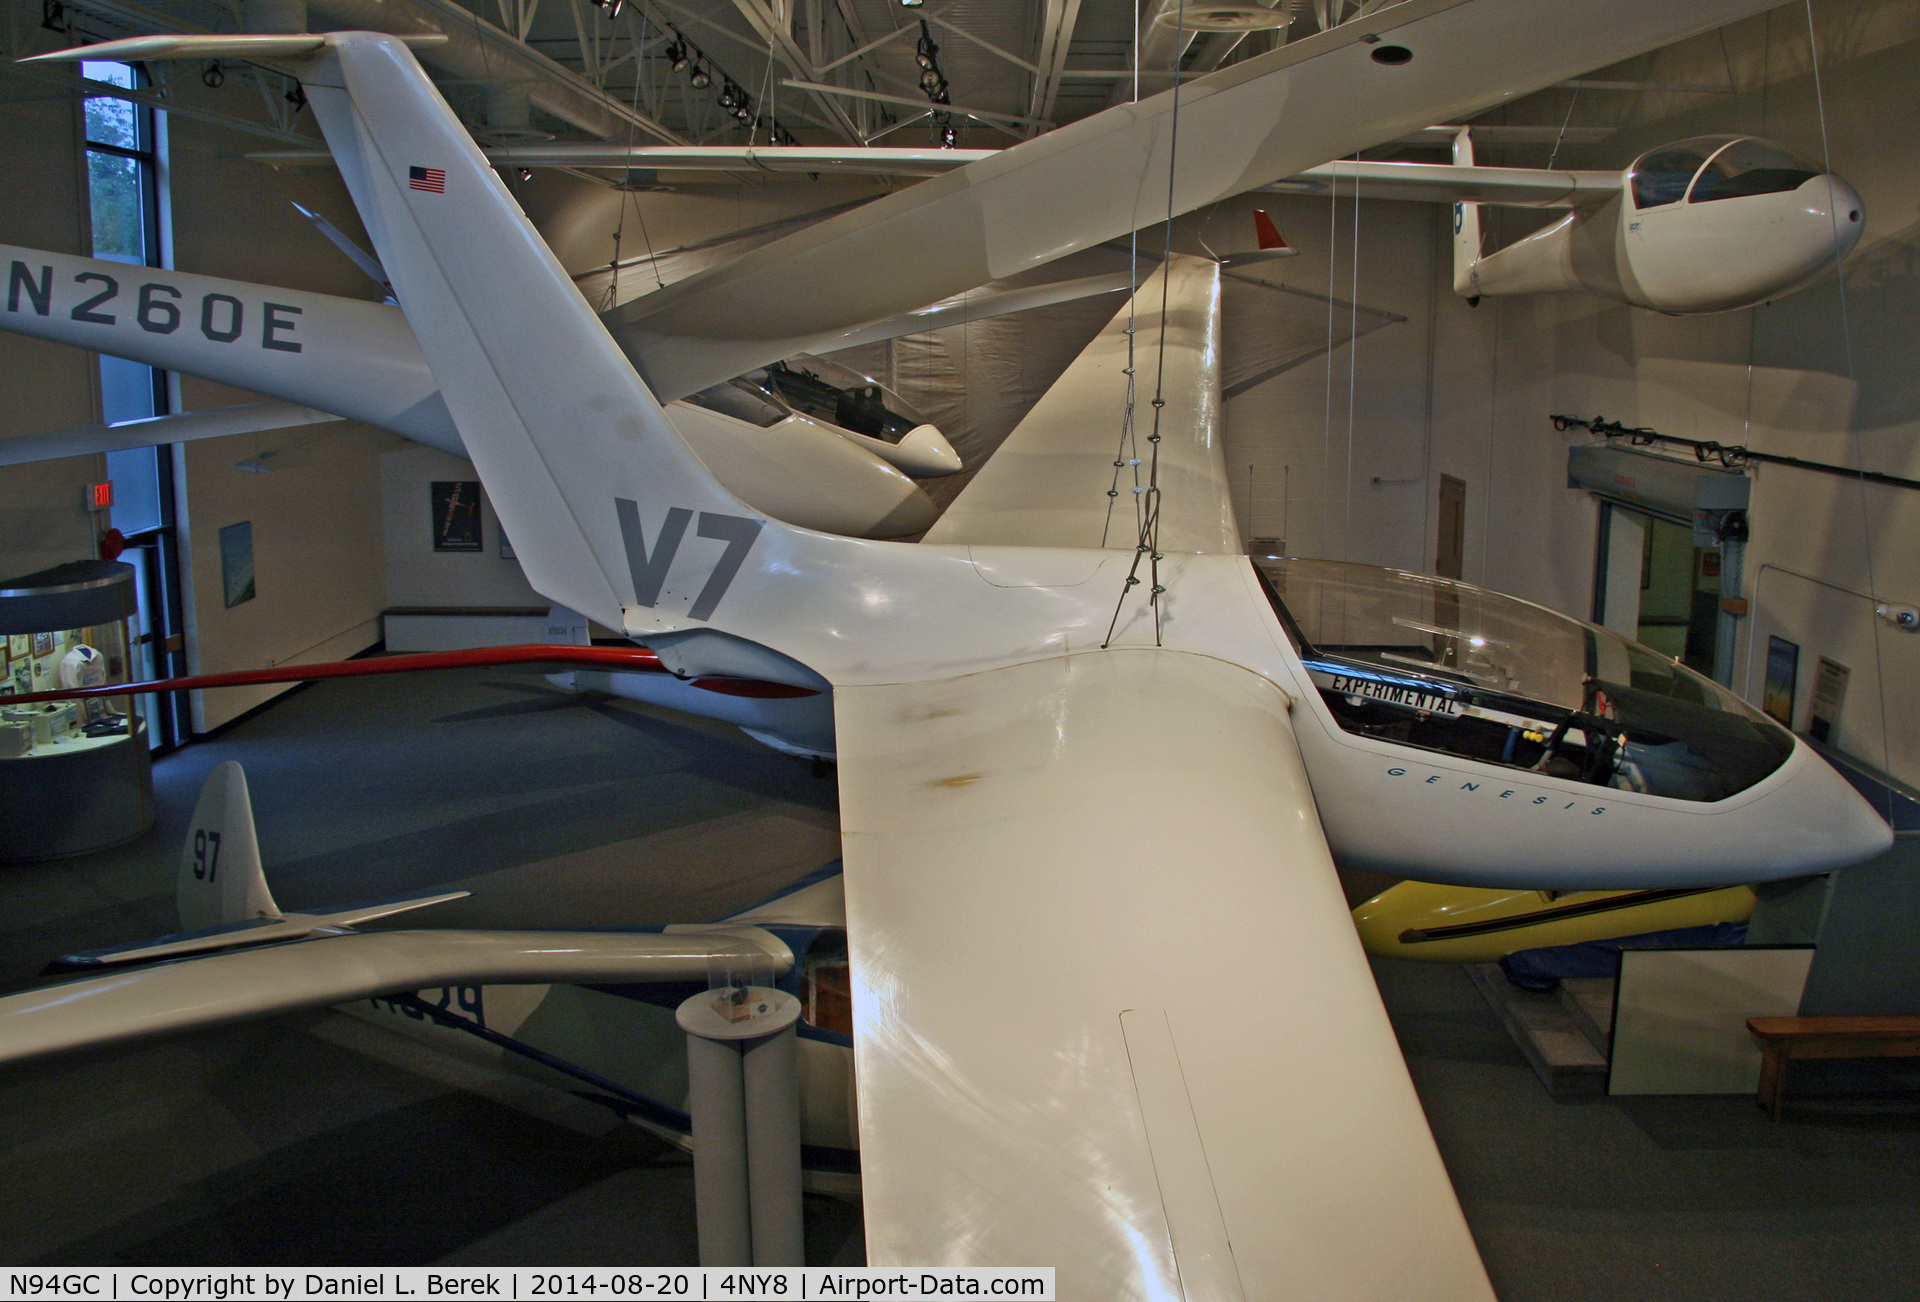 N94GC, 1994 Marske Genesis 1 C/N 0000, This unusual flying wing sailplane is on display at the National Soaring Museum.